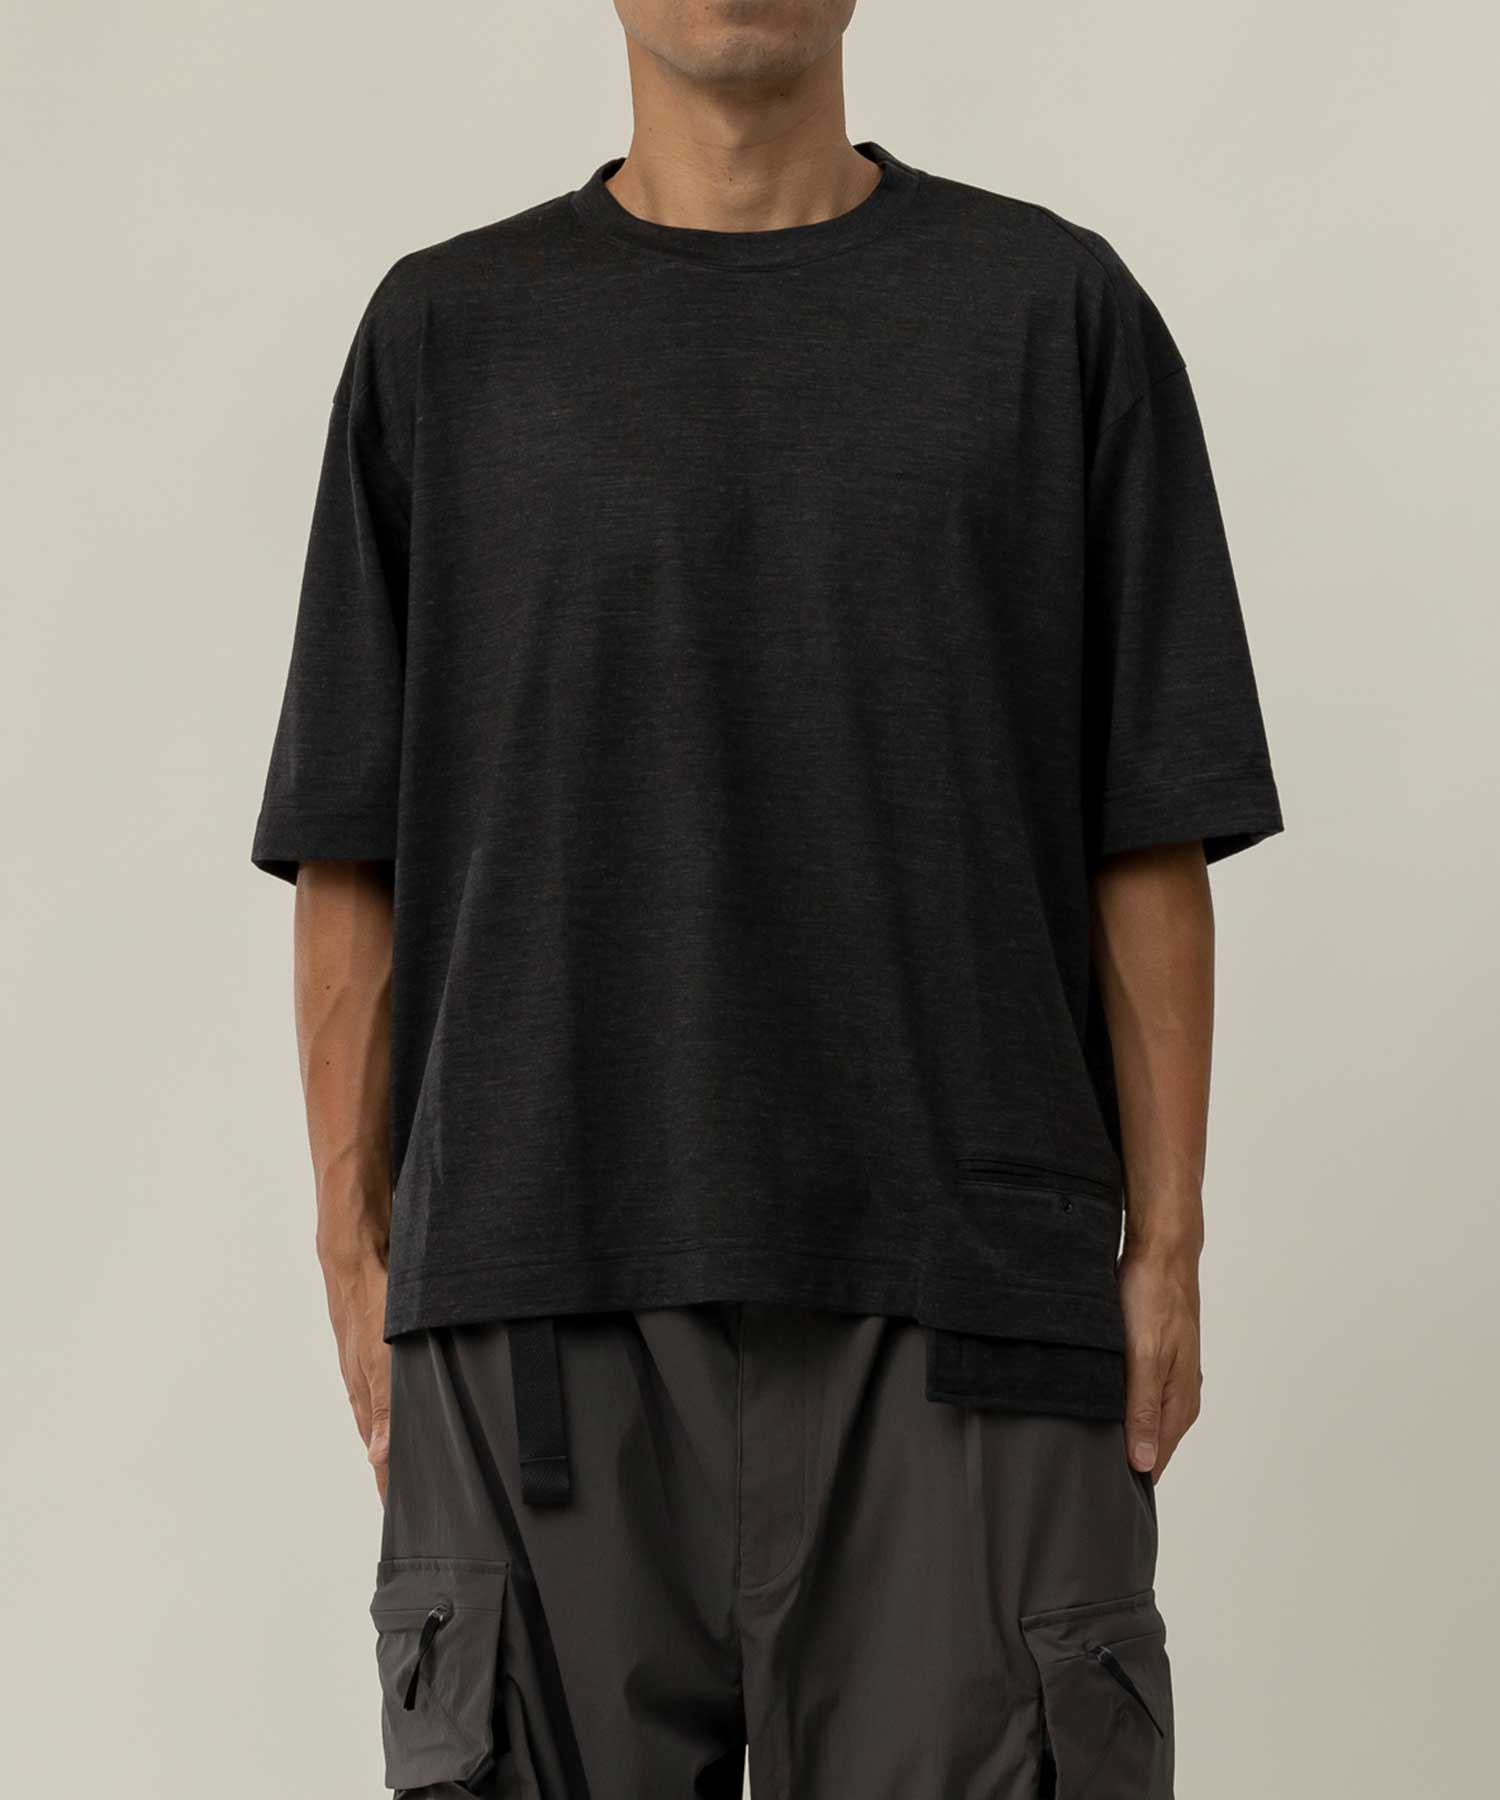 【MENS】Wool Blend T-shirts WOL ウールジャージー素材 断熱 防臭 ドライ Tシャツ ウールブレンド / 100% Wool Jersey / アルクフェニックス